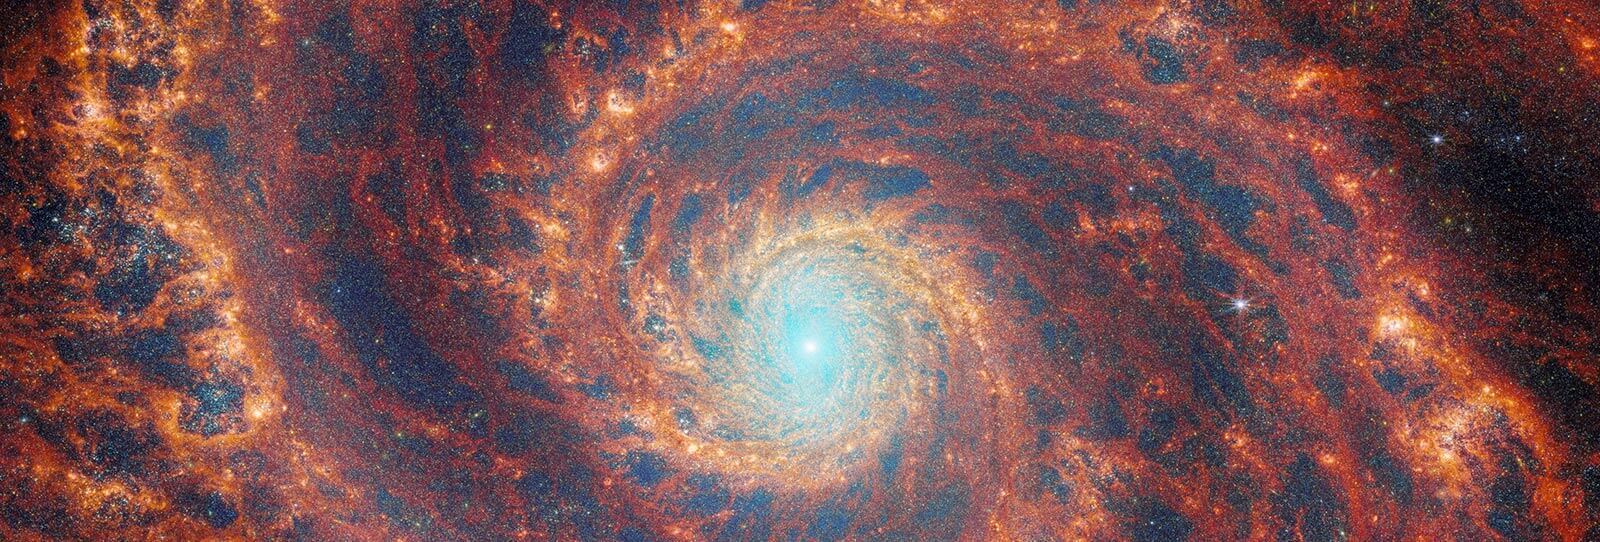 M51 – La Galassia Whirlpool